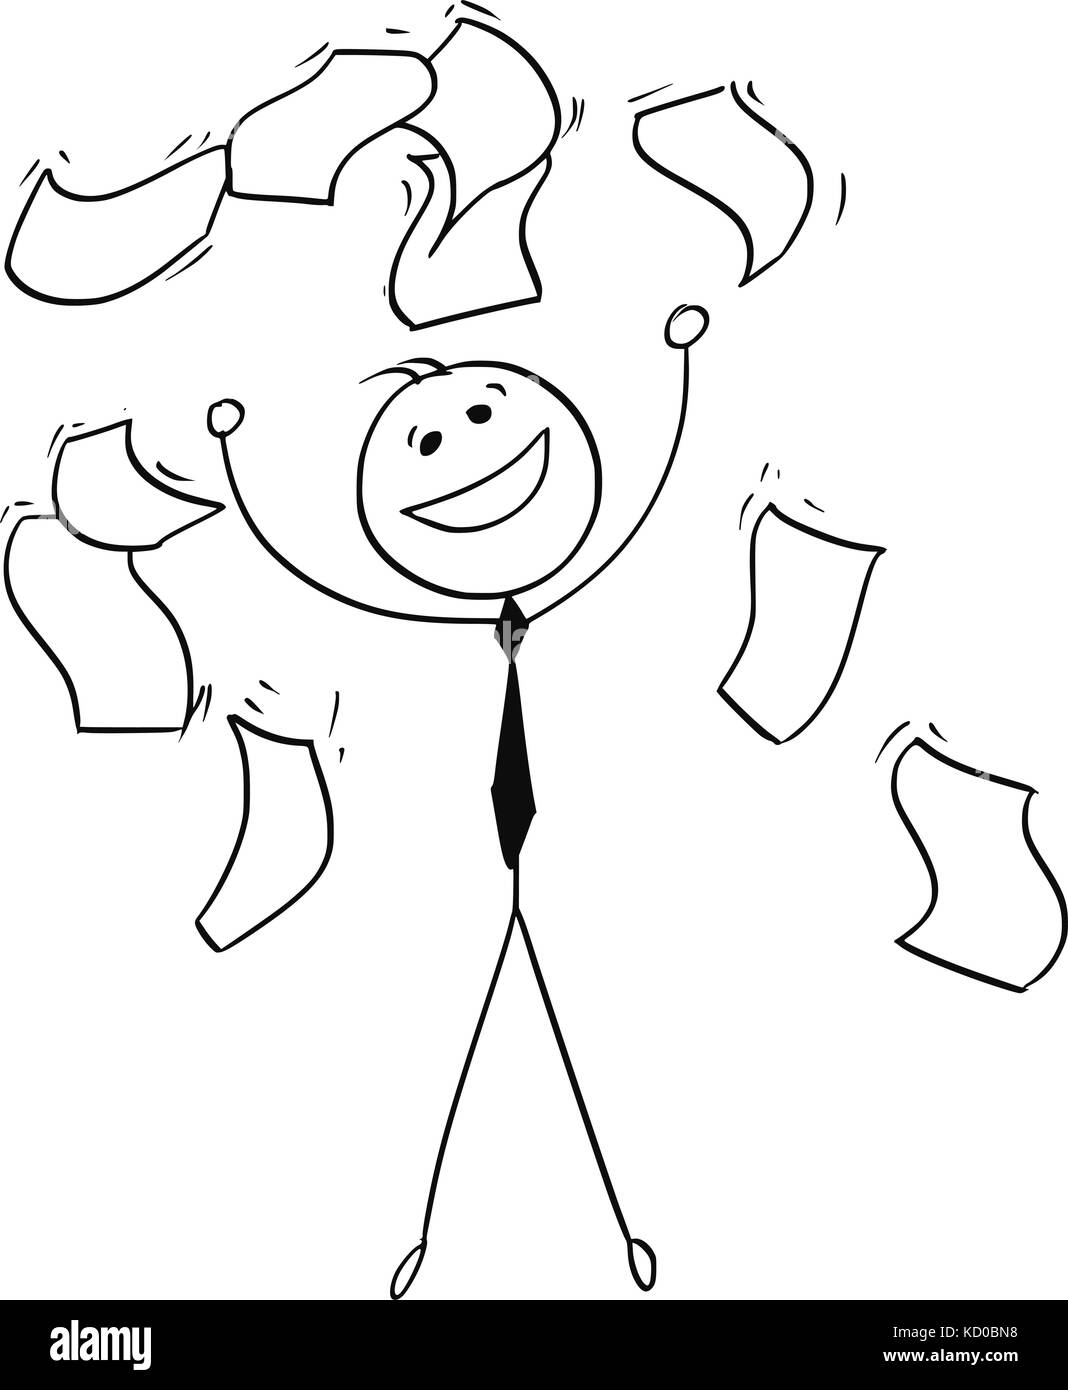 Cartoon stick Mann Abbildung: Glück glücklich Geschäftsmann werfen Dokumente in die Luft und die Papiere um ihn fallen. Stock Vektor